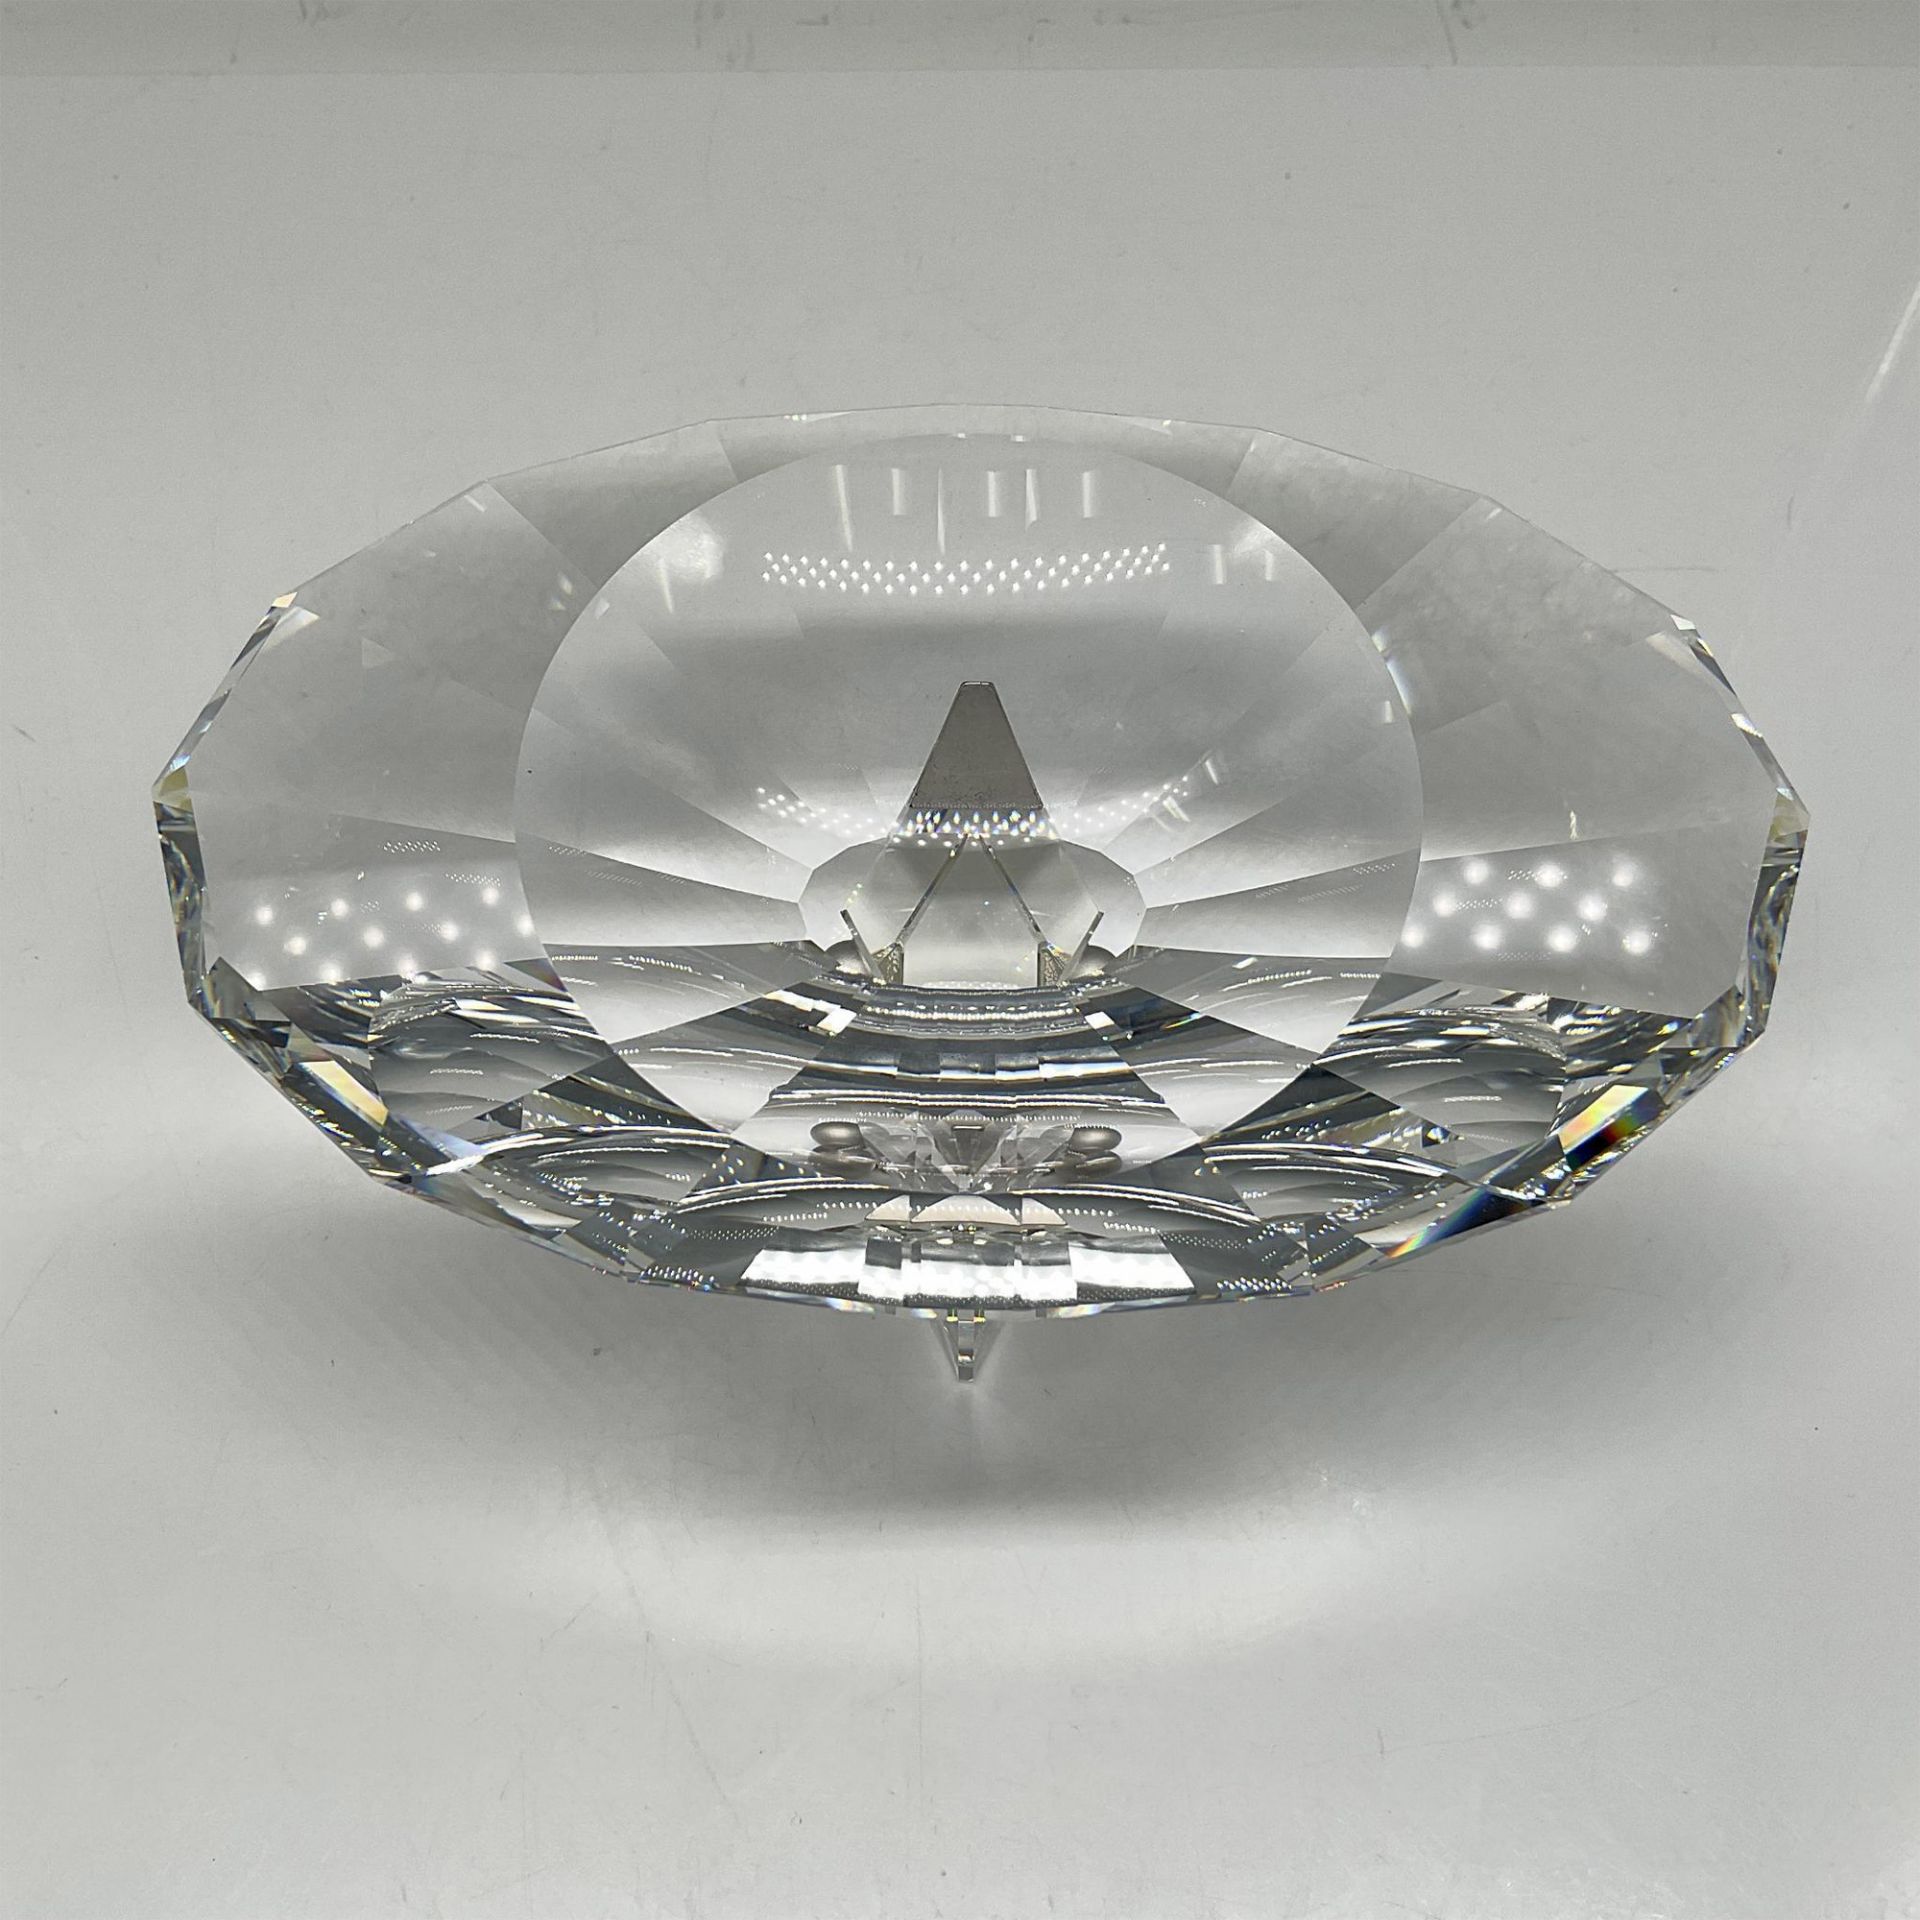 Swarovski Crystal Selection Caviar Bowl, Euclid - Image 3 of 5